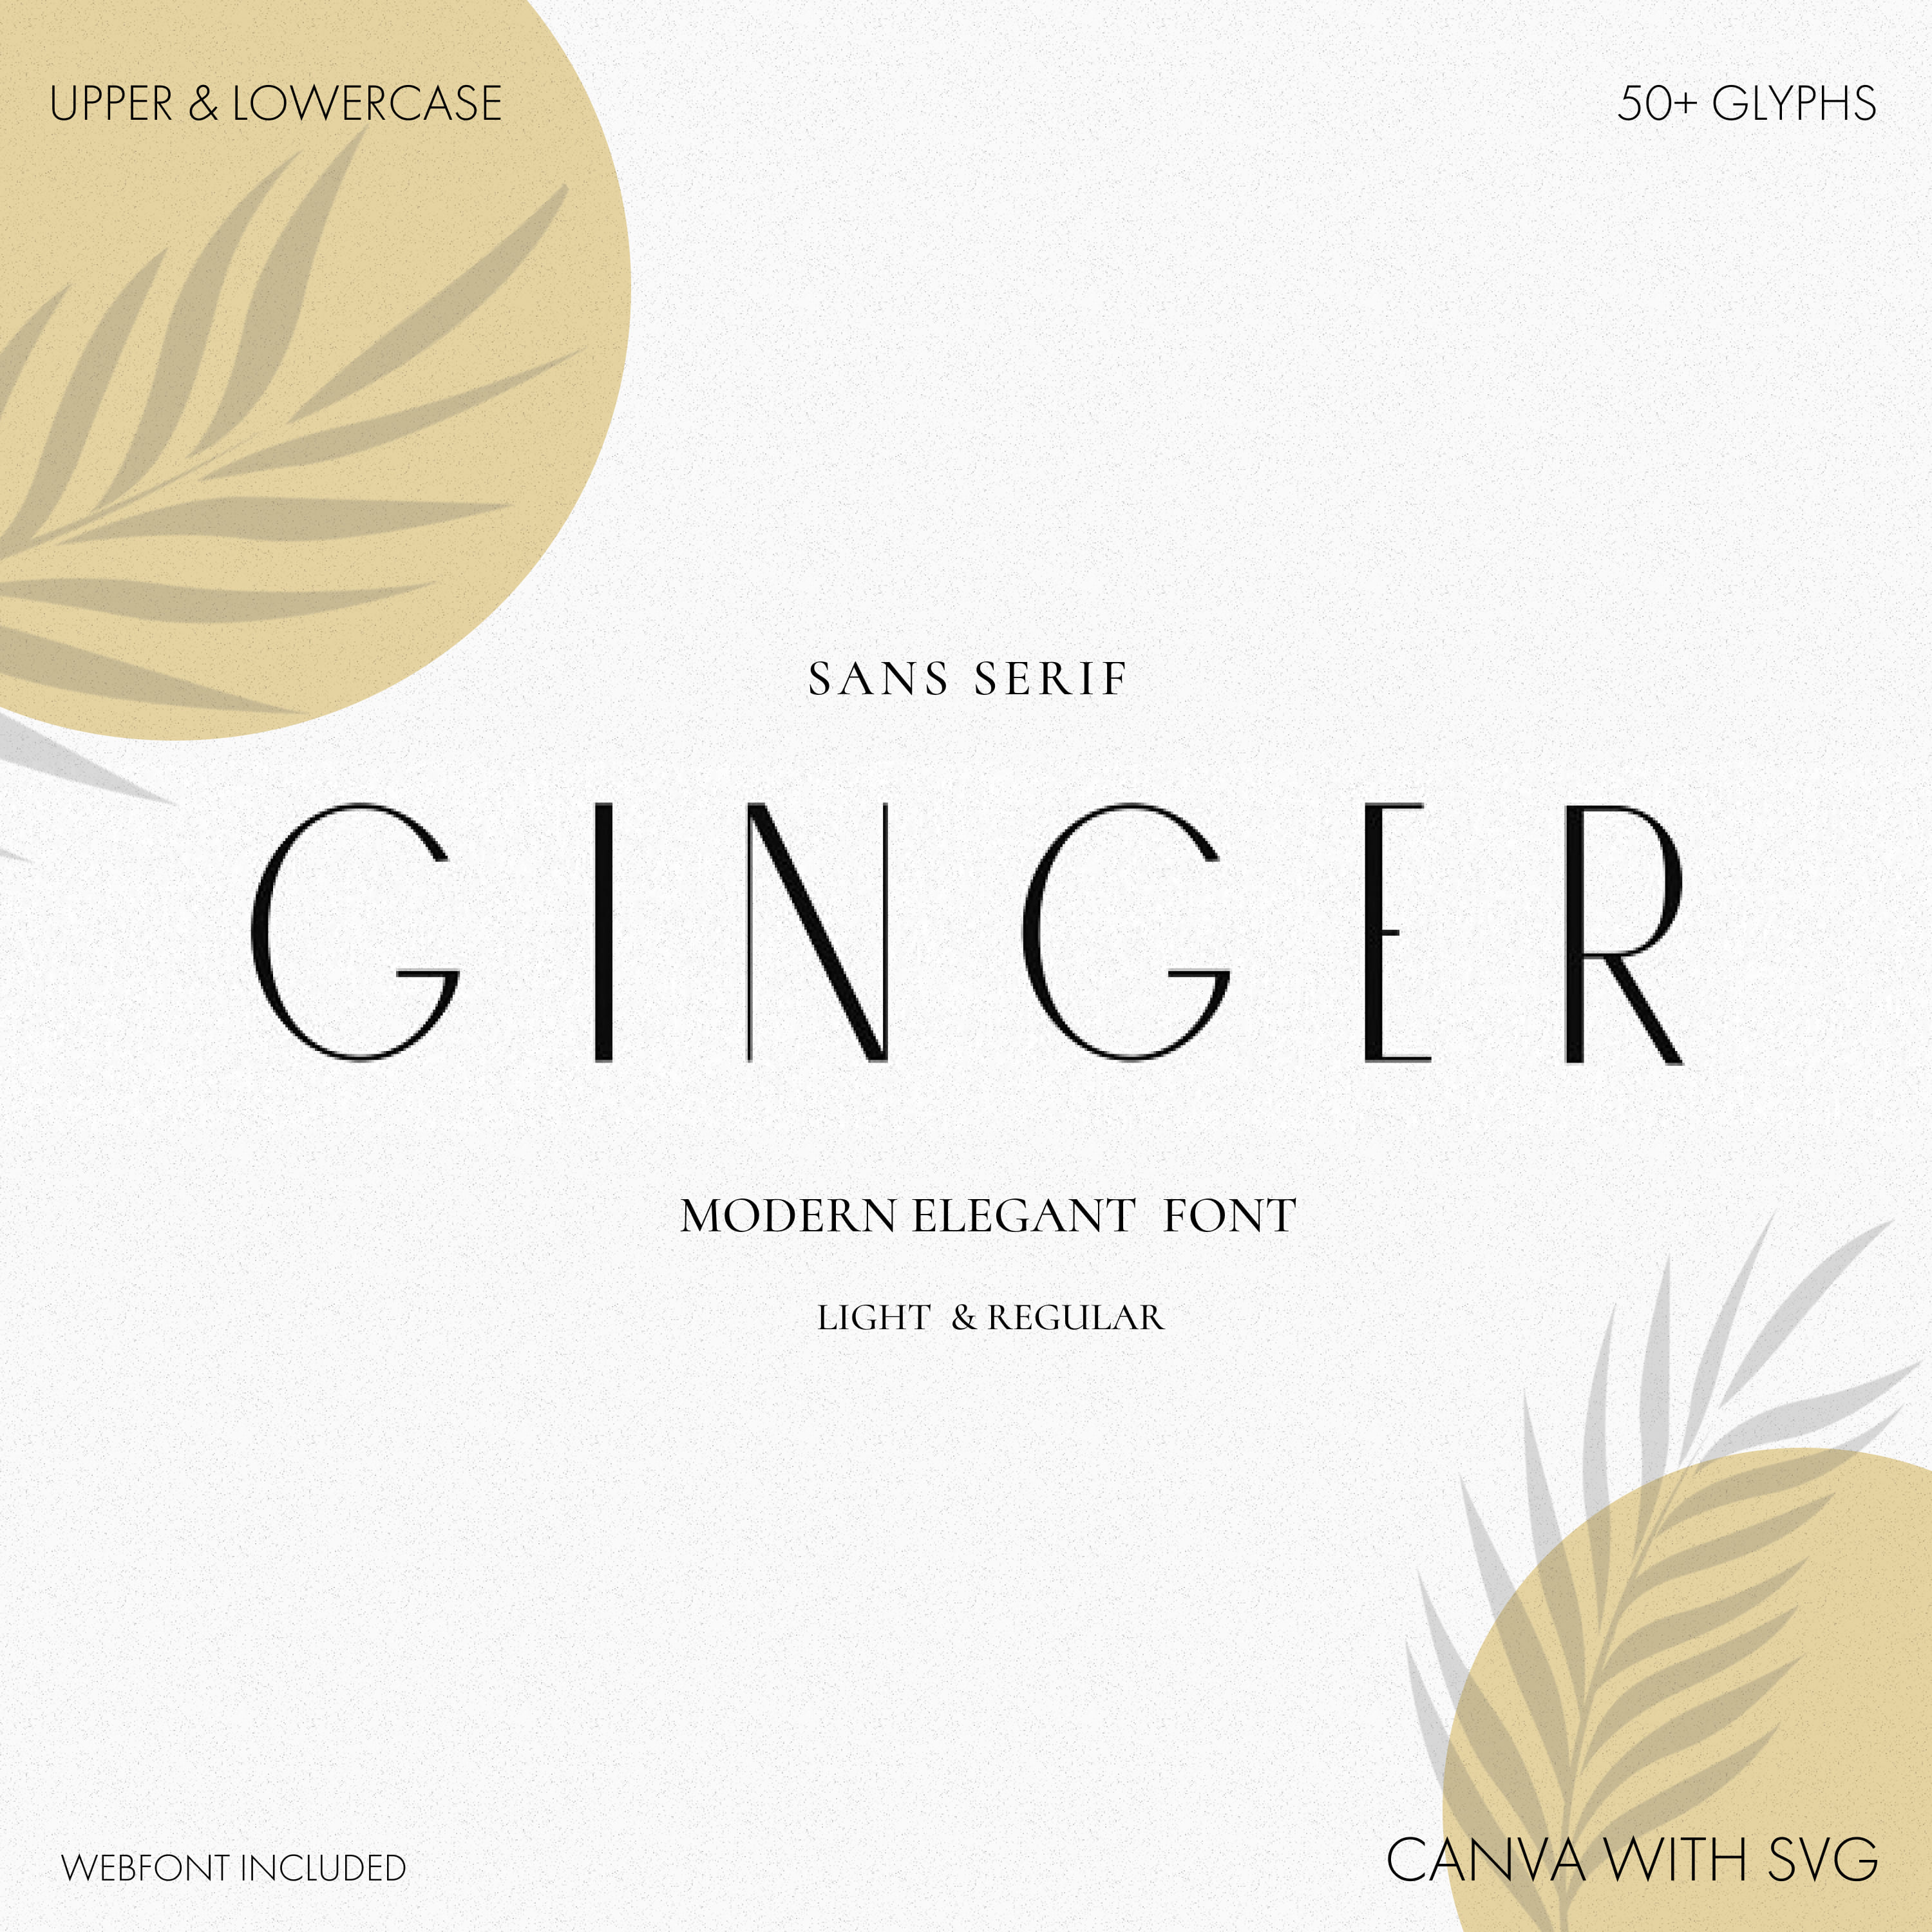 Ginger An Elegant Modern Font Cover Image.